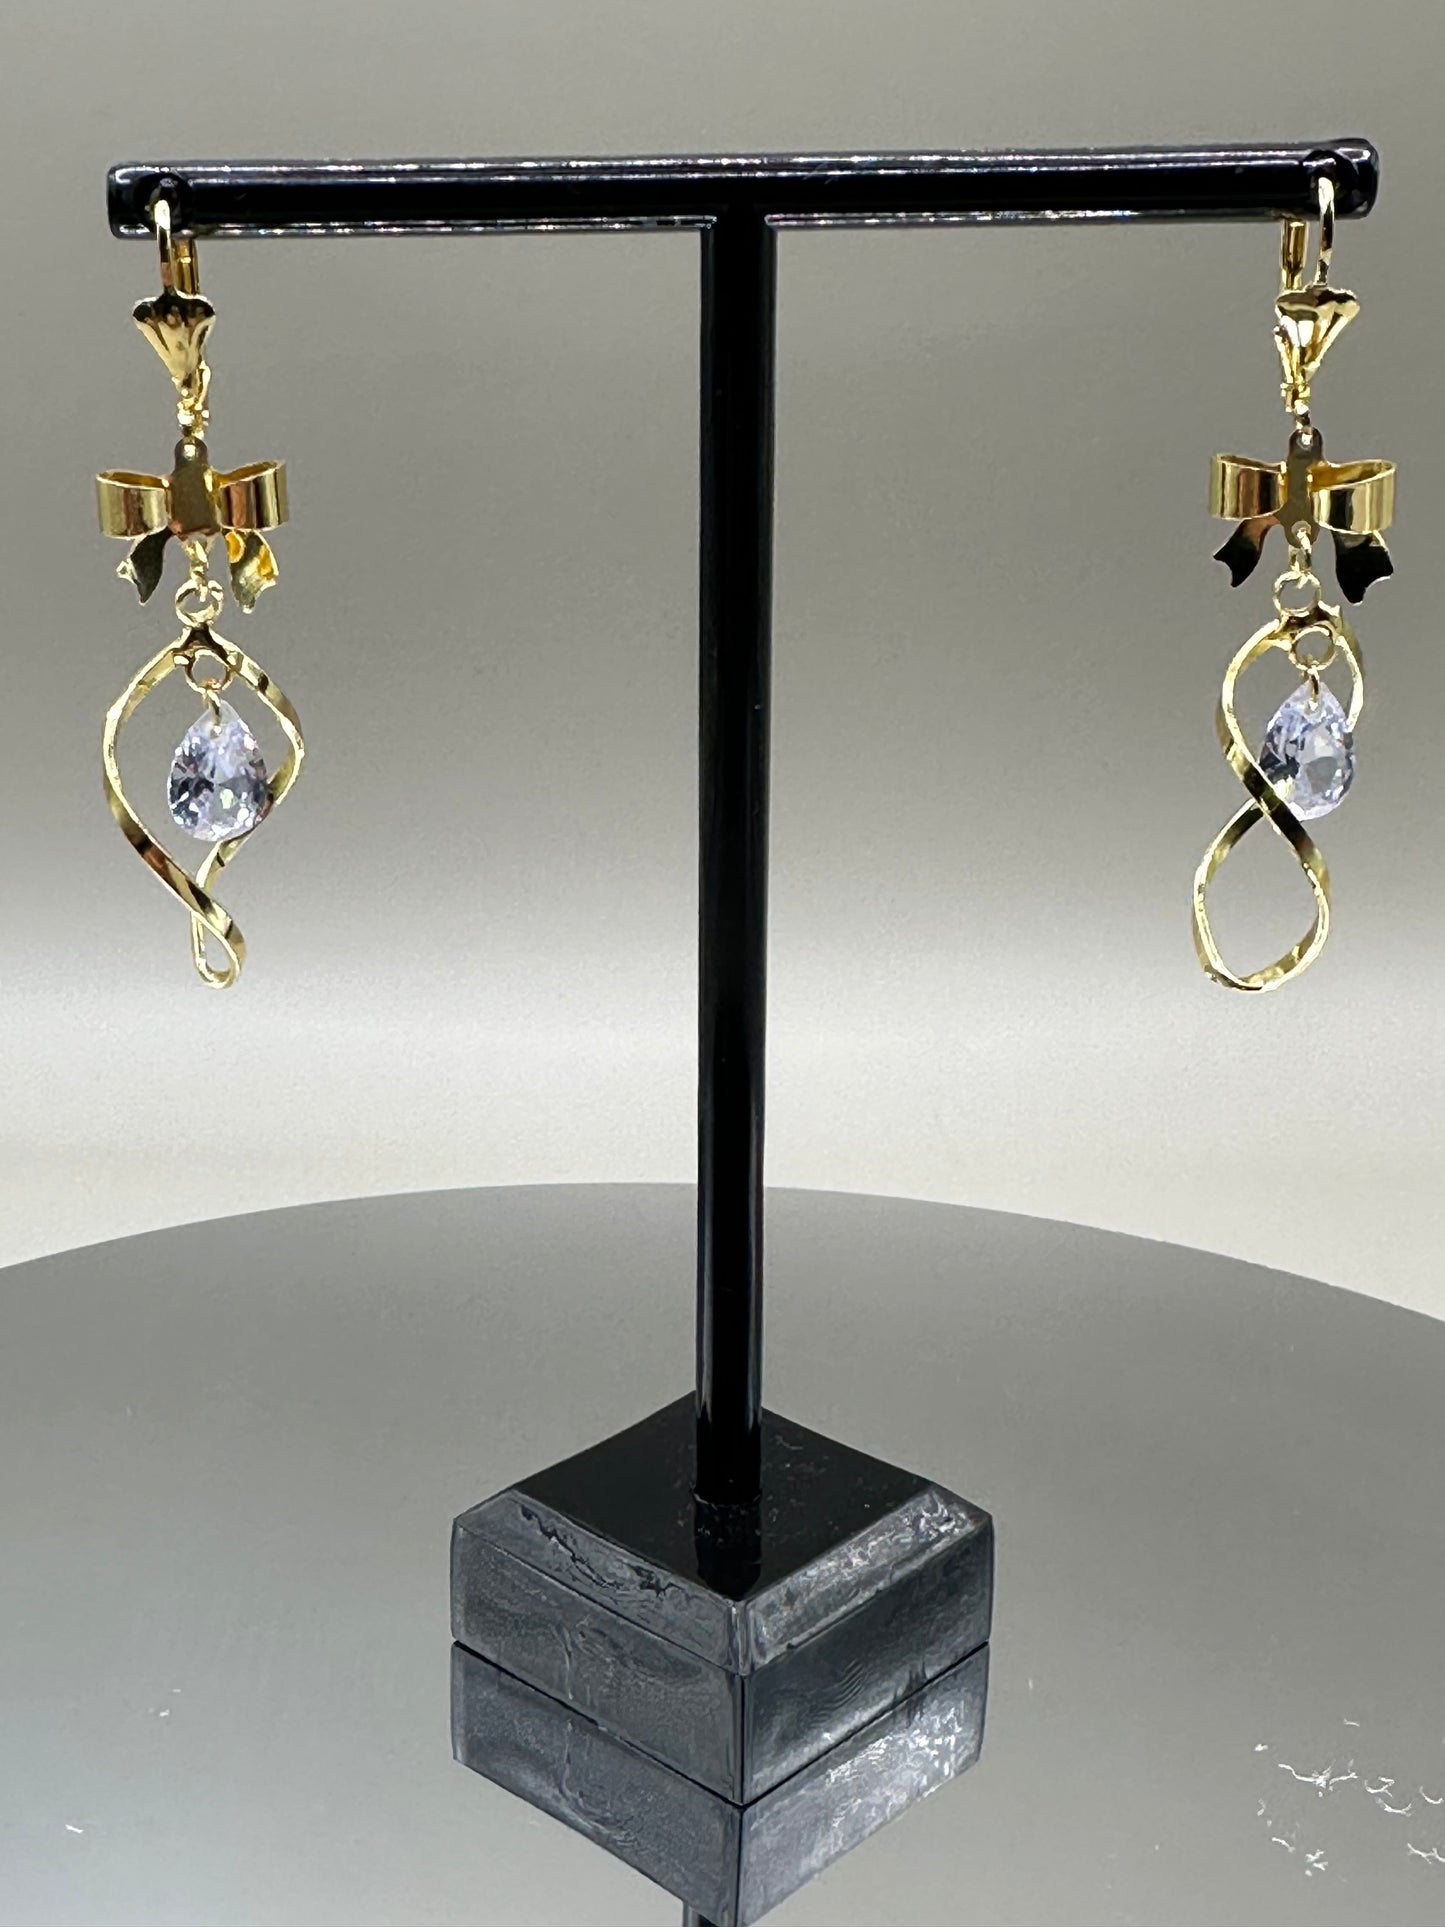 18k Gold filled earrings elegant